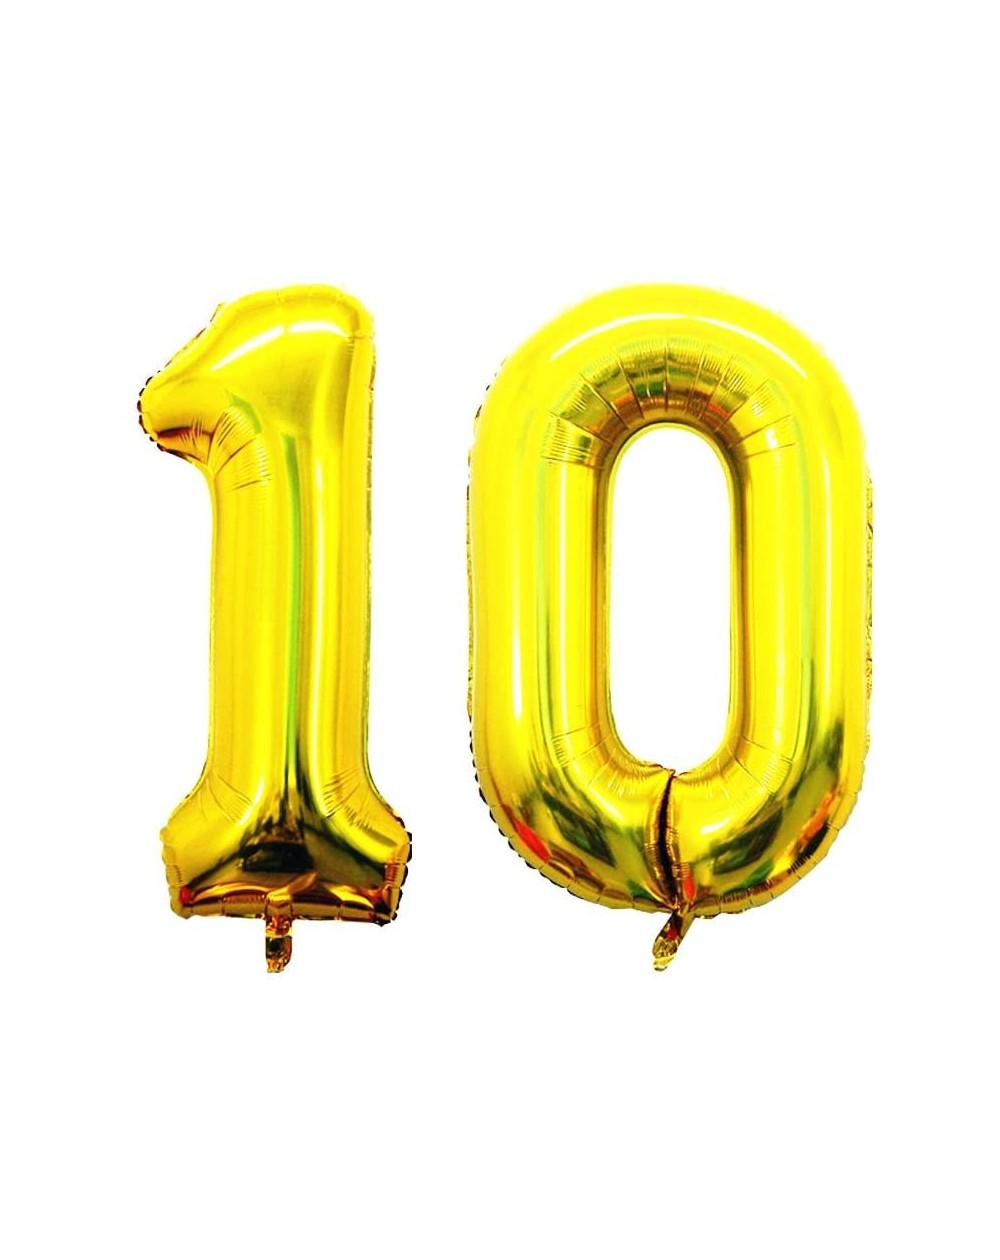 10 Balloons